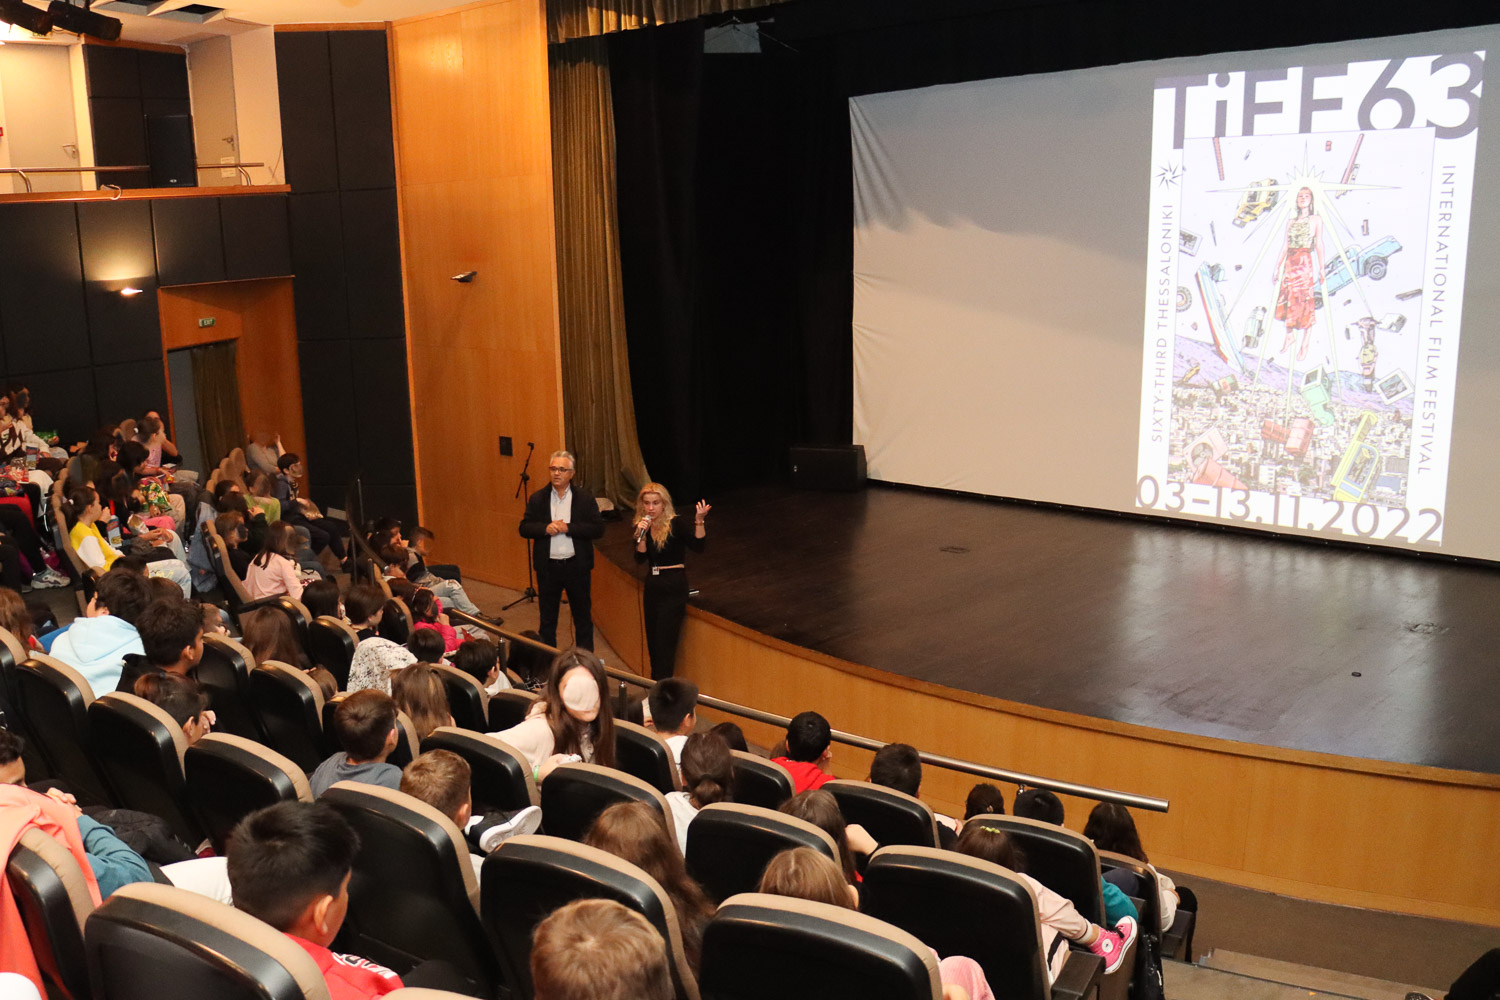 63ο Φεστιβάλ Κινηματογράφου Θεσσαλονίκης - Οι μαθητές στο Σινεμά του δήμου Νεάπολης-Συκεών